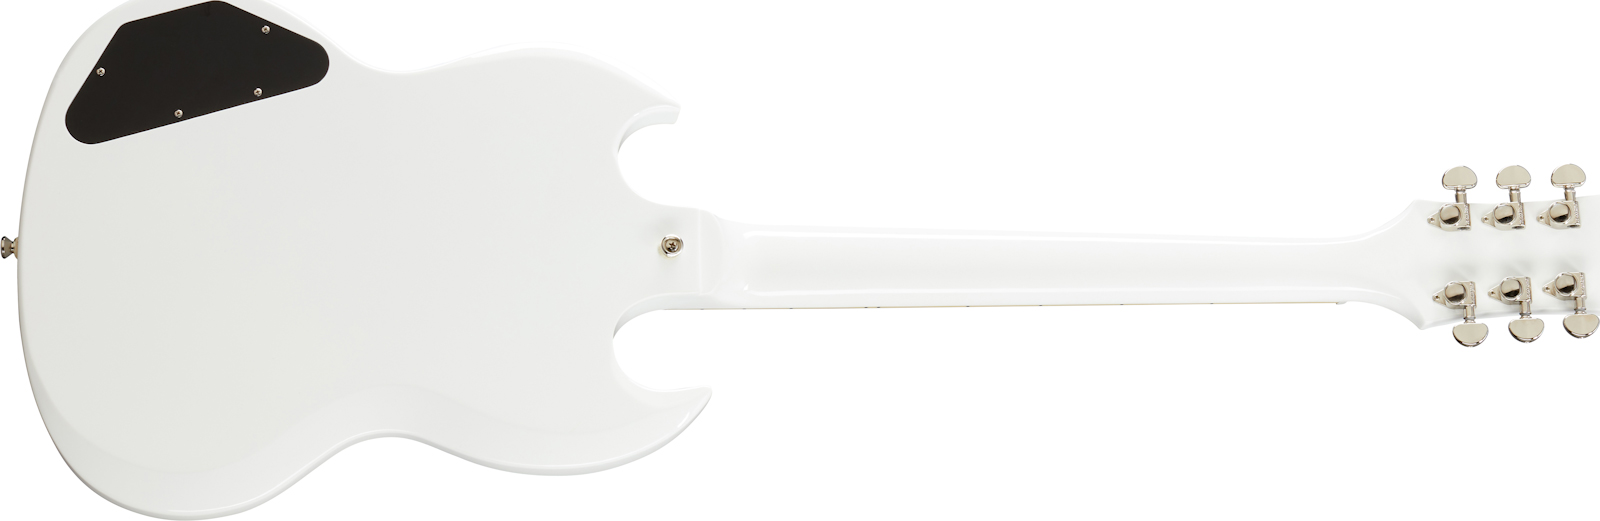 Epiphone Sg Standard Lh Gaucher 2h Ht Lau - Alpine White - Linkshandige elektrische gitaar - Variation 1